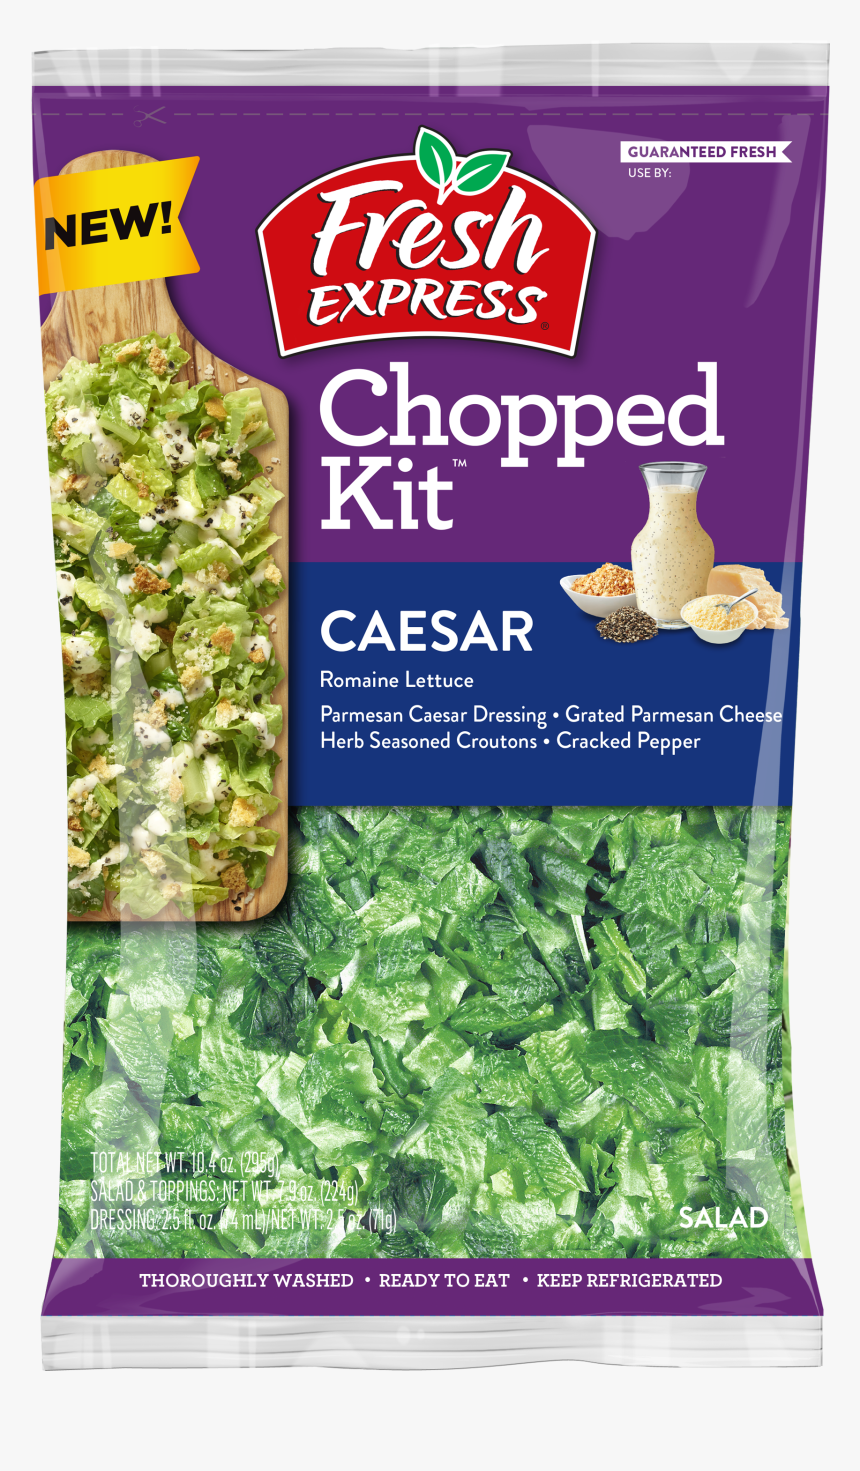 Caesar Chopped Kit™ - Fresh Express Chopped Caesar Salad Kit, HD Png Download, Free Download